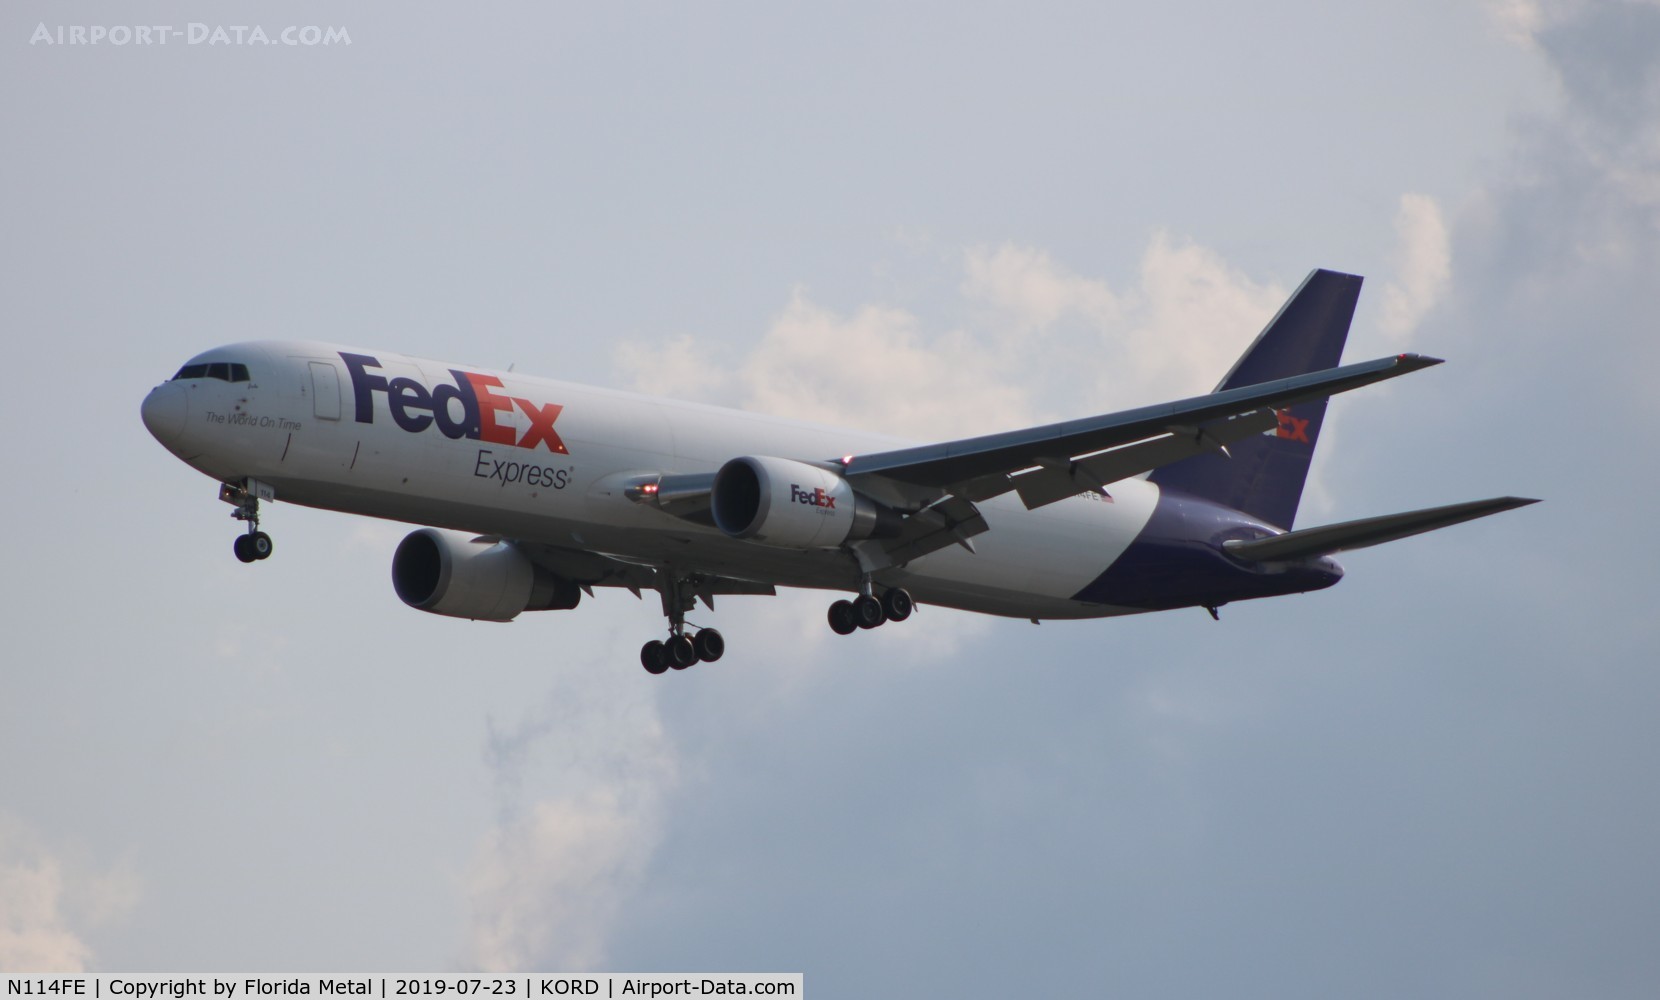 N114FE, 2015 Boeing 767-3S2F/ER C/N 42712, FedEx 767-300F zx